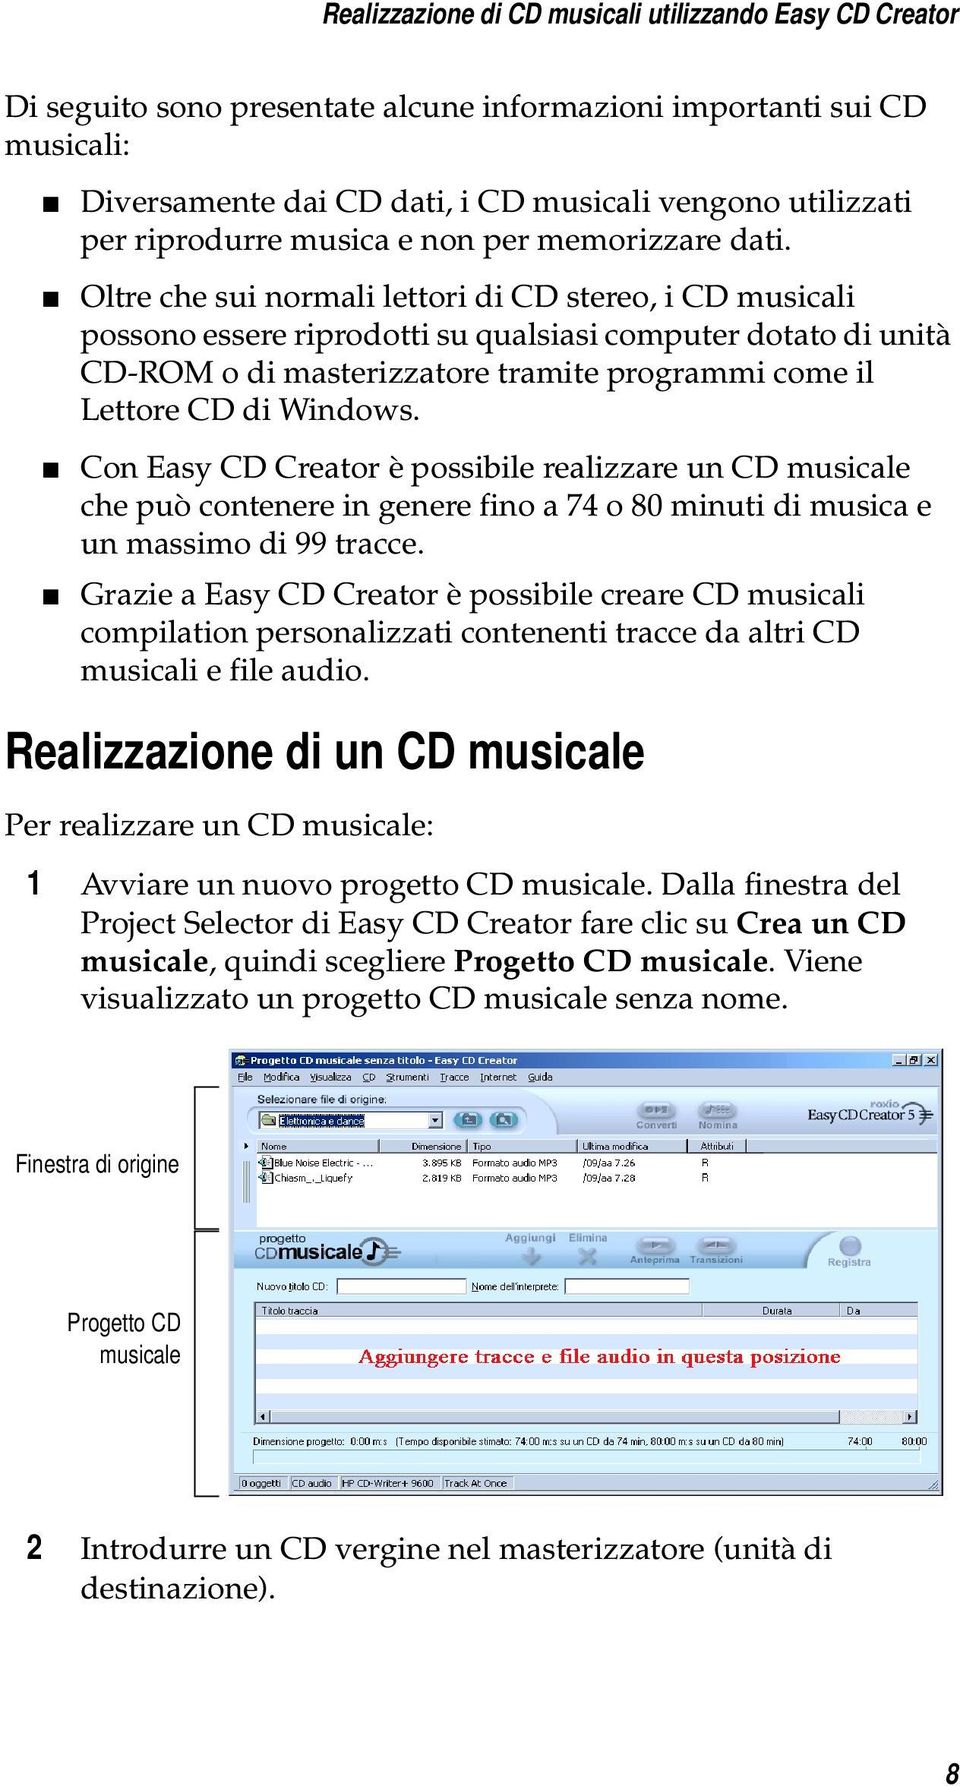 Oltre che sui normali lettori di CD stereo, i CD musicali possono essere riprodotti su qualsiasi computer dotato di unità CD-ROM o di masterizzatore tramite programmi come il Lettore CD di Windows.